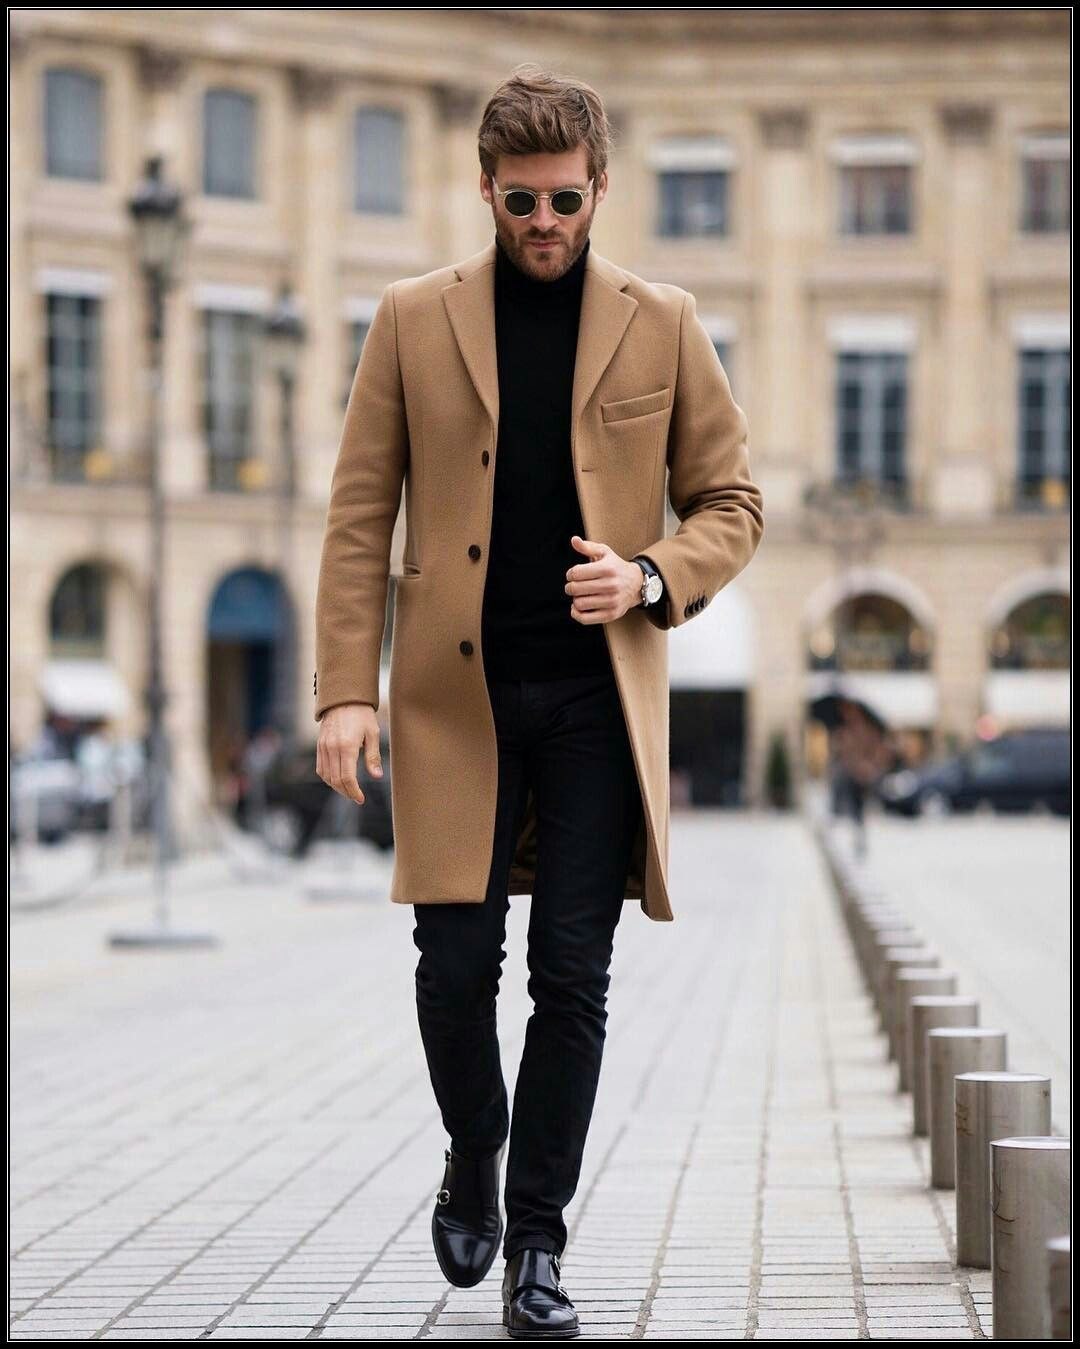 Мужское поло юс. Пальто мужское. Коричневое пальто мужское. Мужчина в коричневом пальто. Модное мужское пальто.